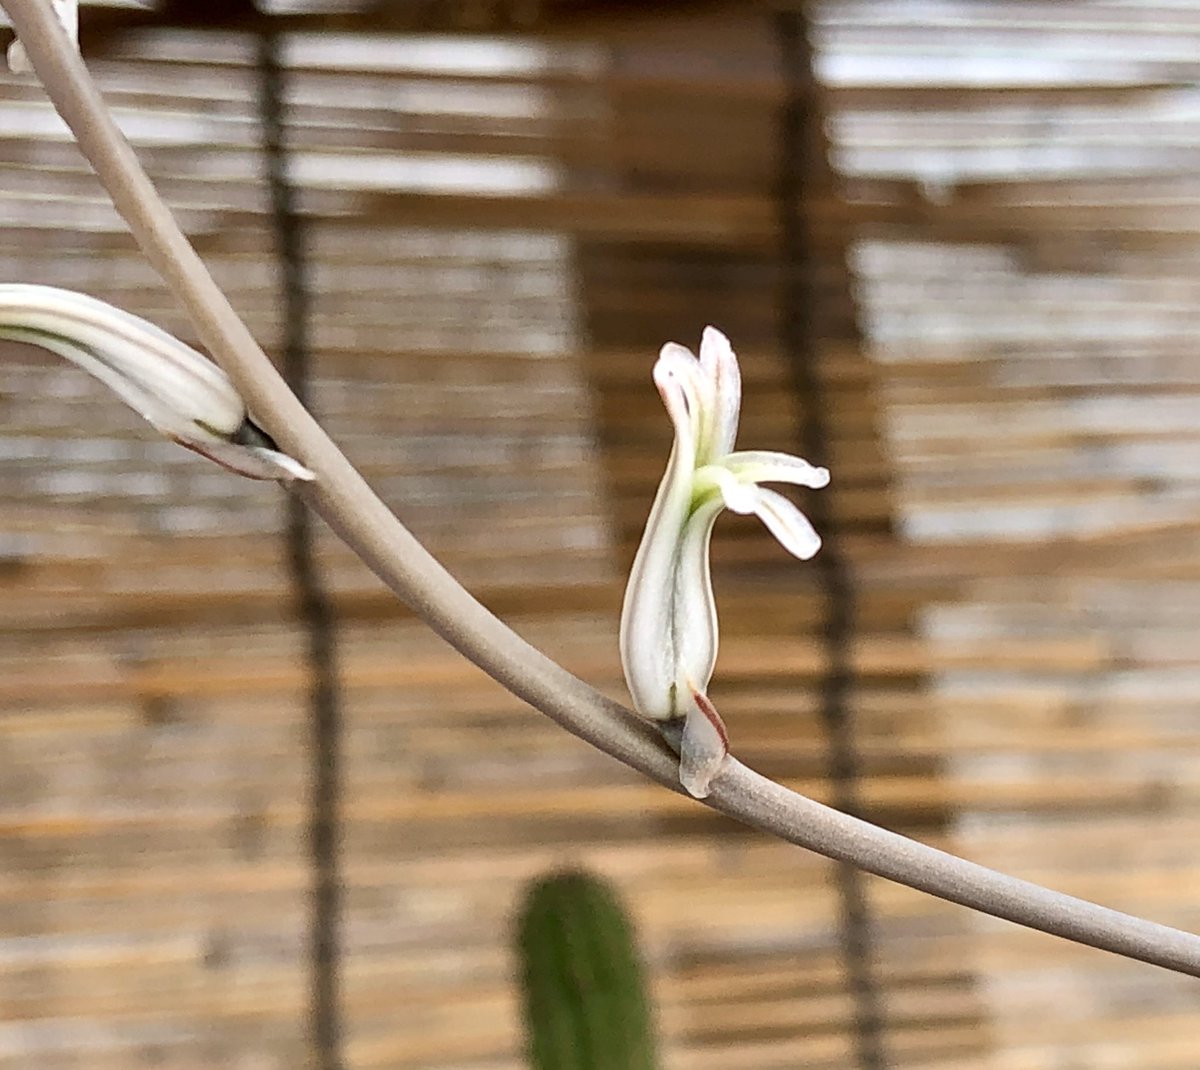 コタロー 生き物 V垢 ハオルチア達にも開花の兆し 一番手はレツーサでした ハオルチアの花は小さく特徴的な形してますね